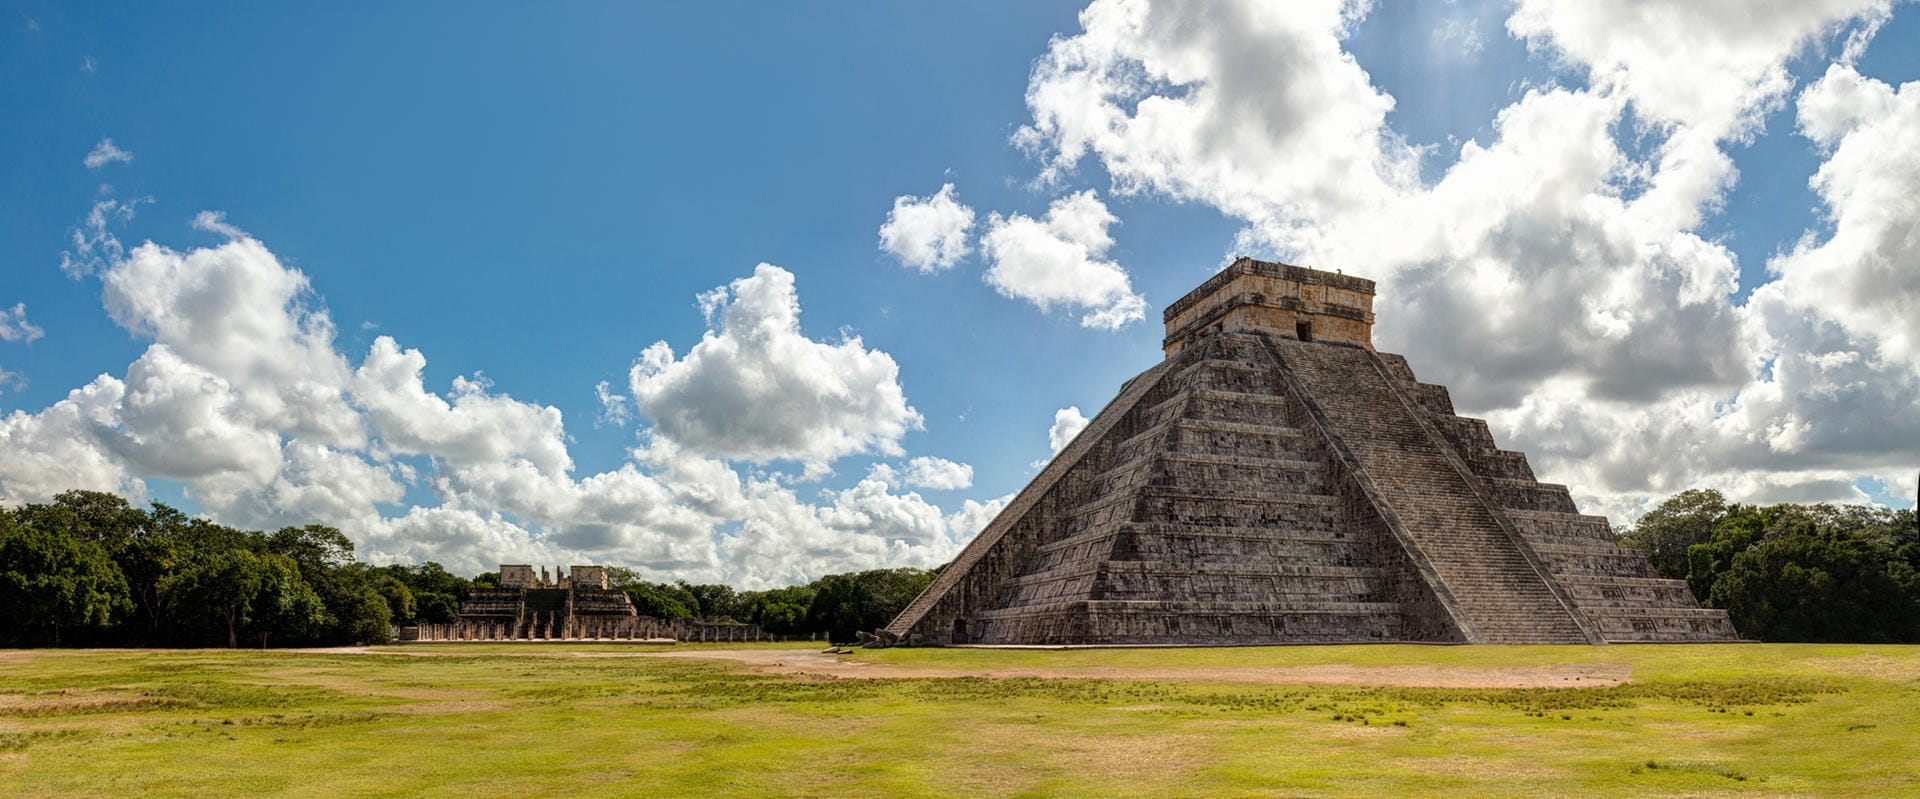 Chichén Itzá: Die weltberühmte Maya-Ruinenstadt hat ihre Eintrittspreise verdoppelt.